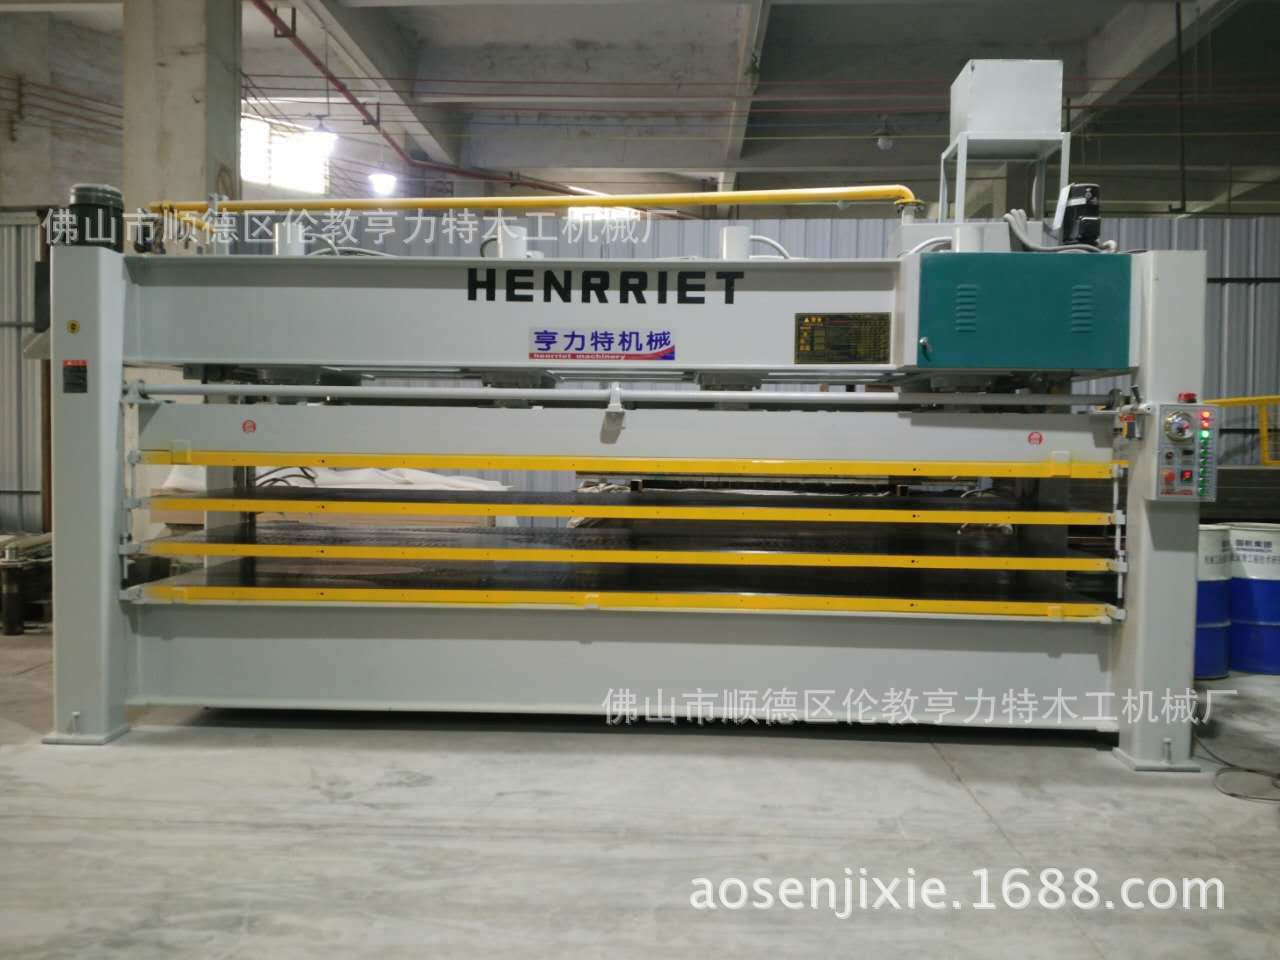 佛山亨力特专业生产聚氨脂发泡板3层4.5米x1.3米液压式非标层压机